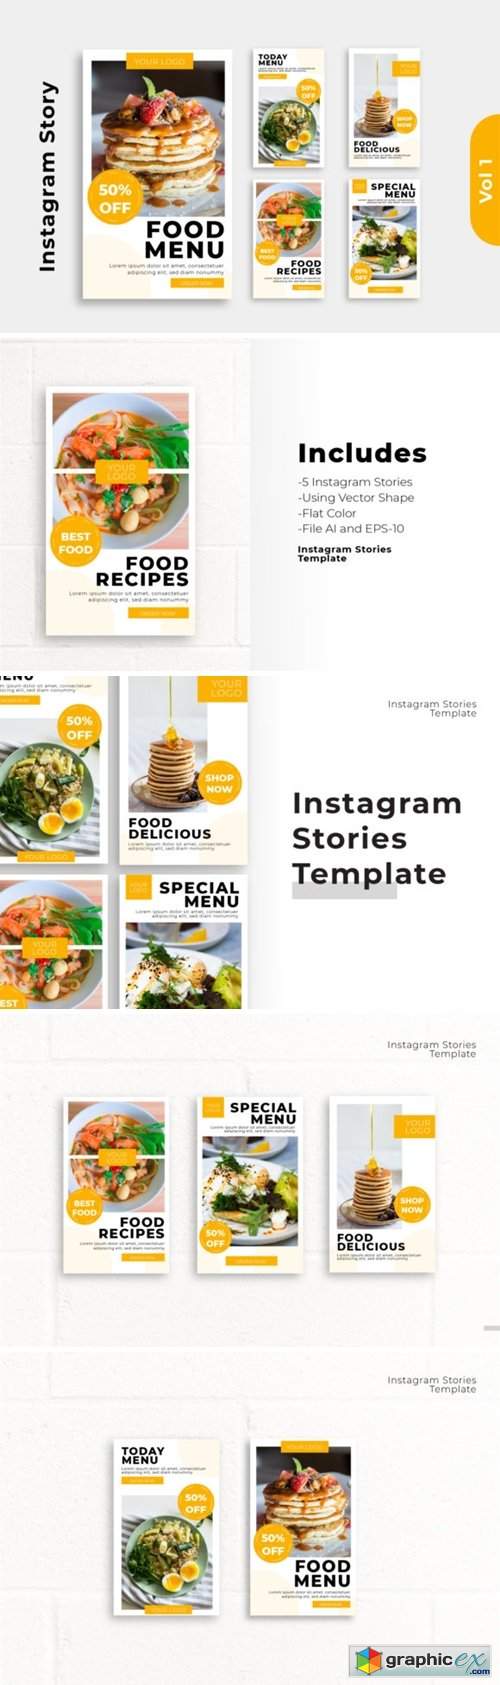  Instagram Stories Graphic Vol 1 